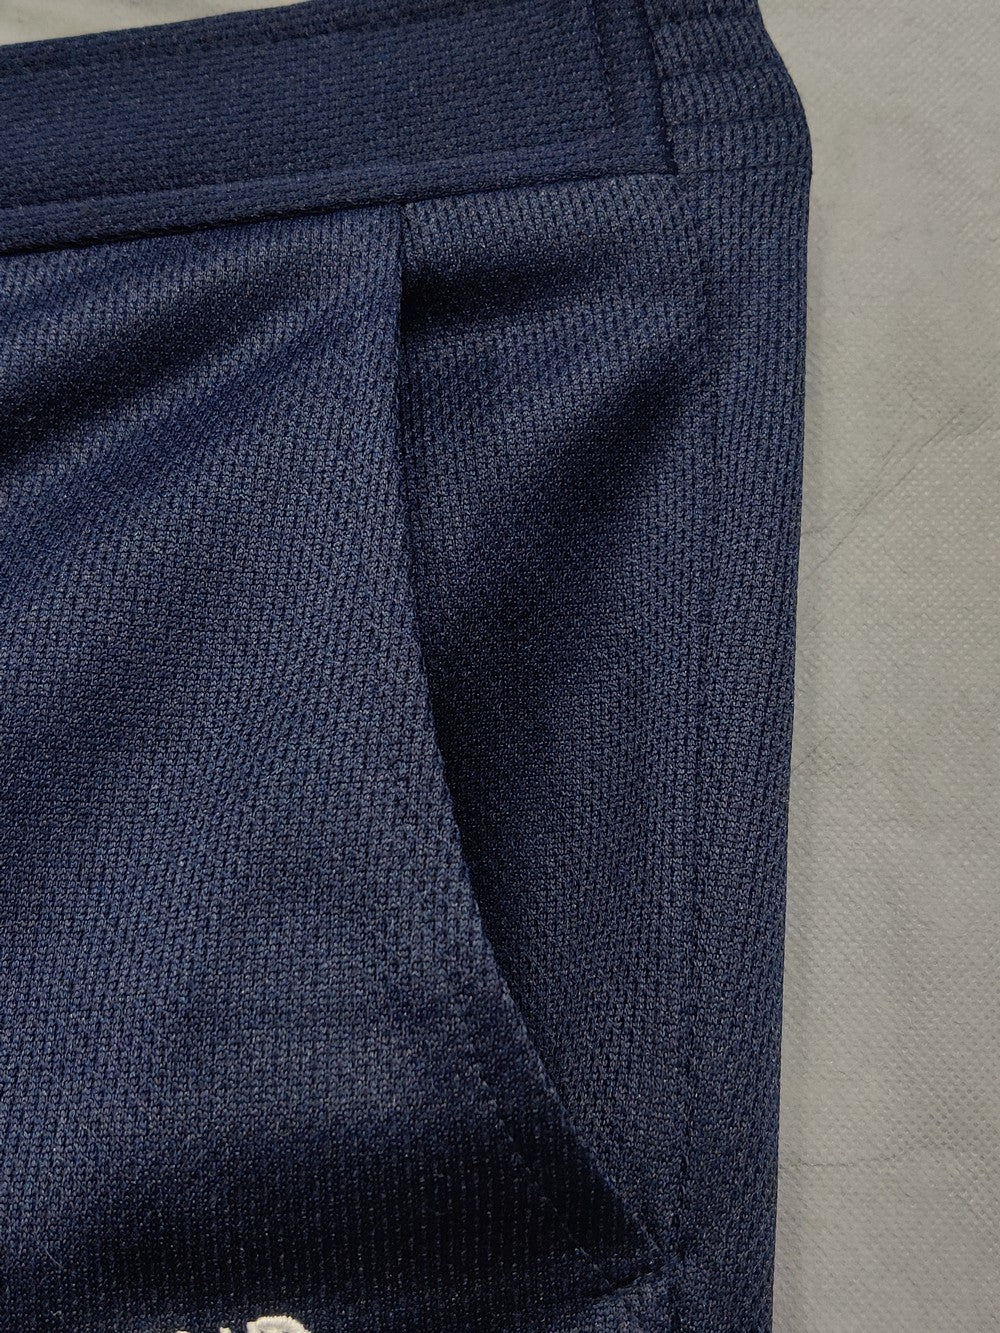 Vivreclub Branded Original Polyester For Men Tracksuits